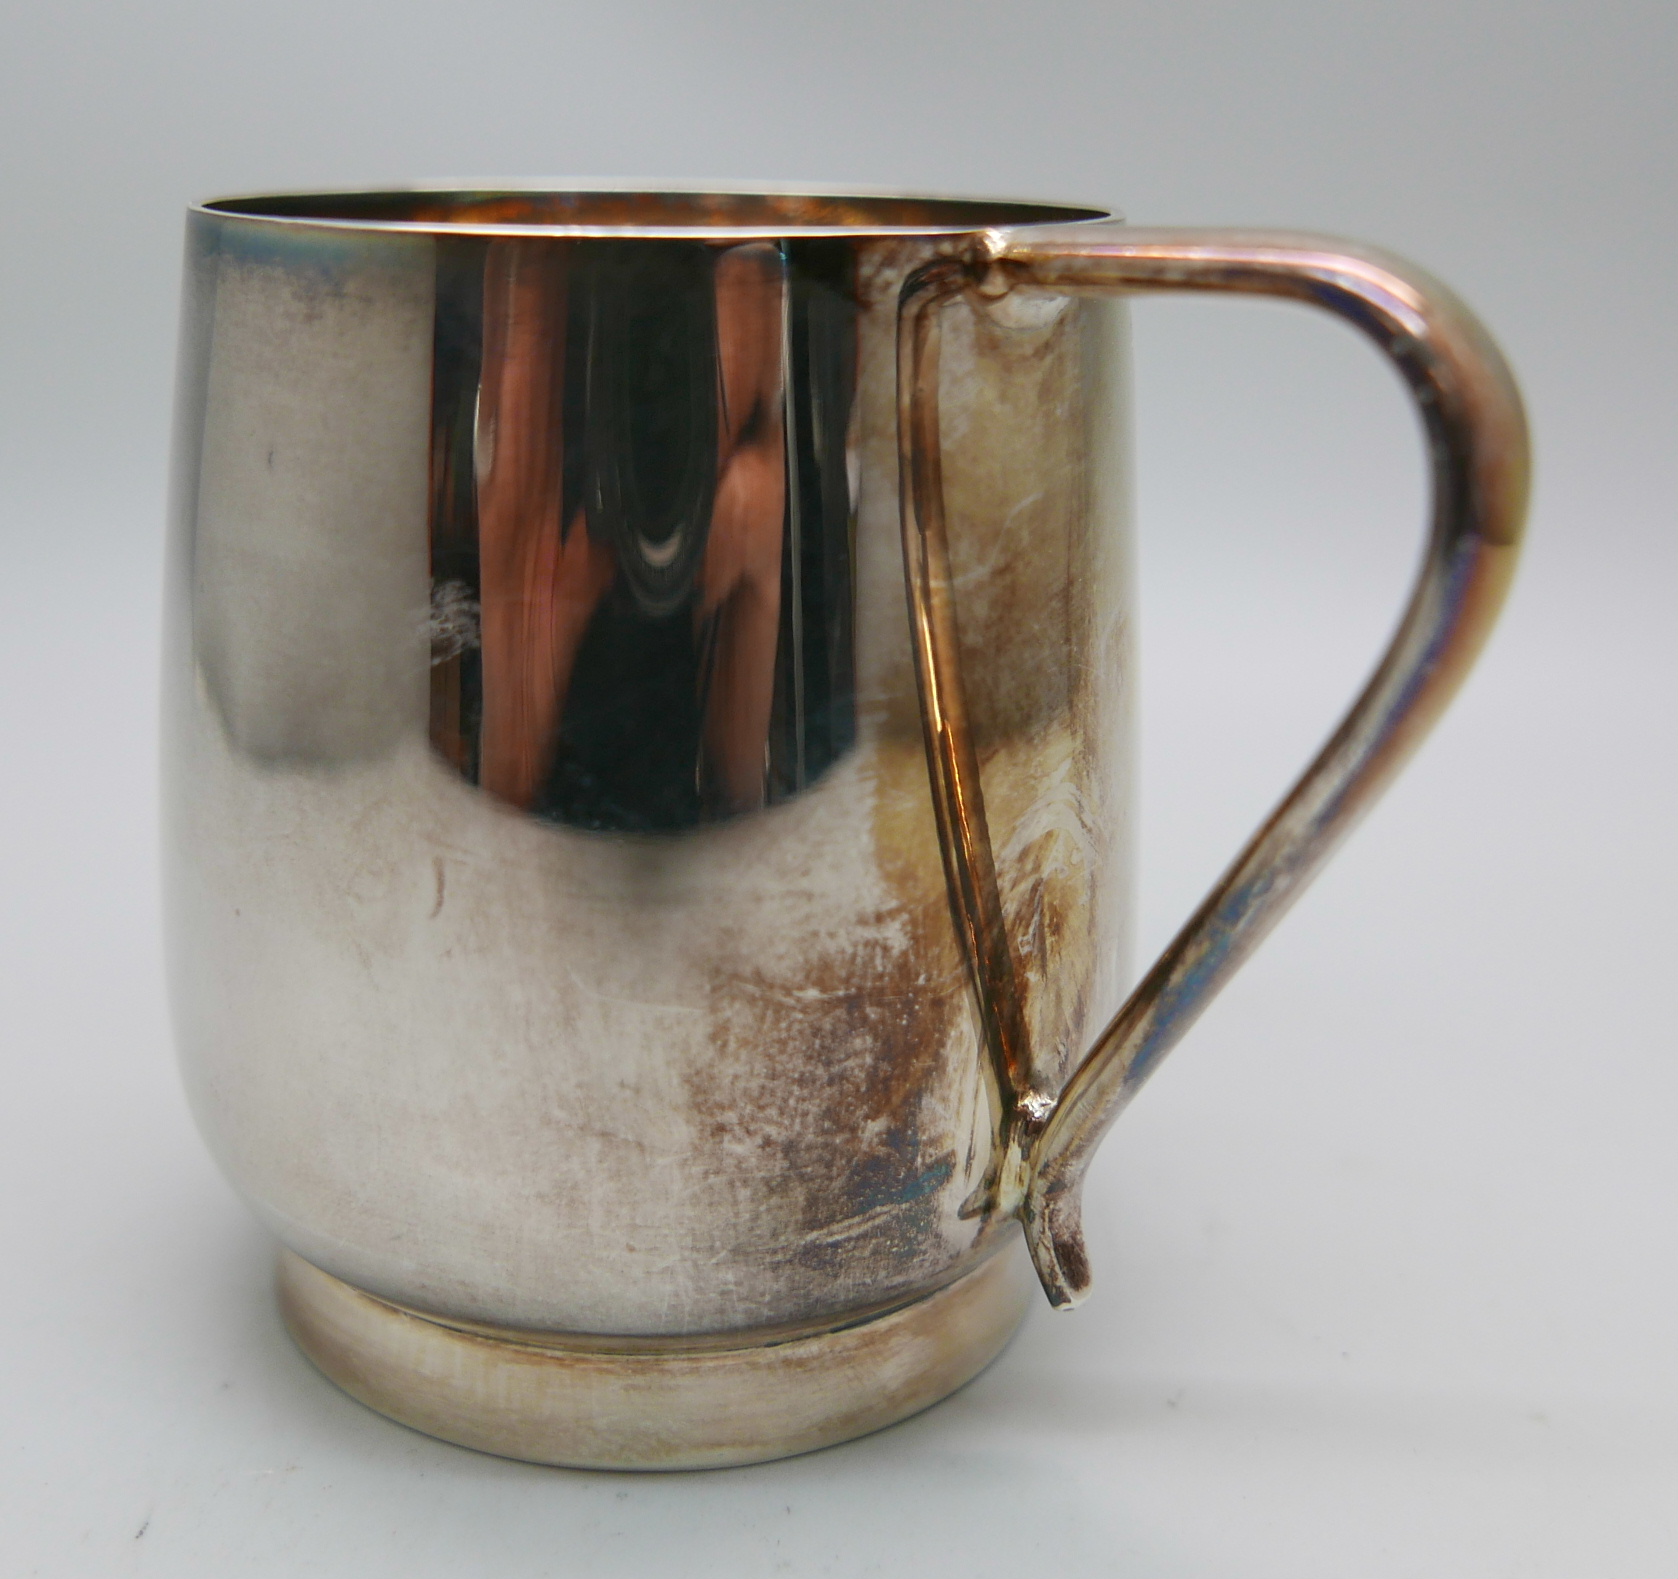 A silver mug, 140g - Image 3 of 4